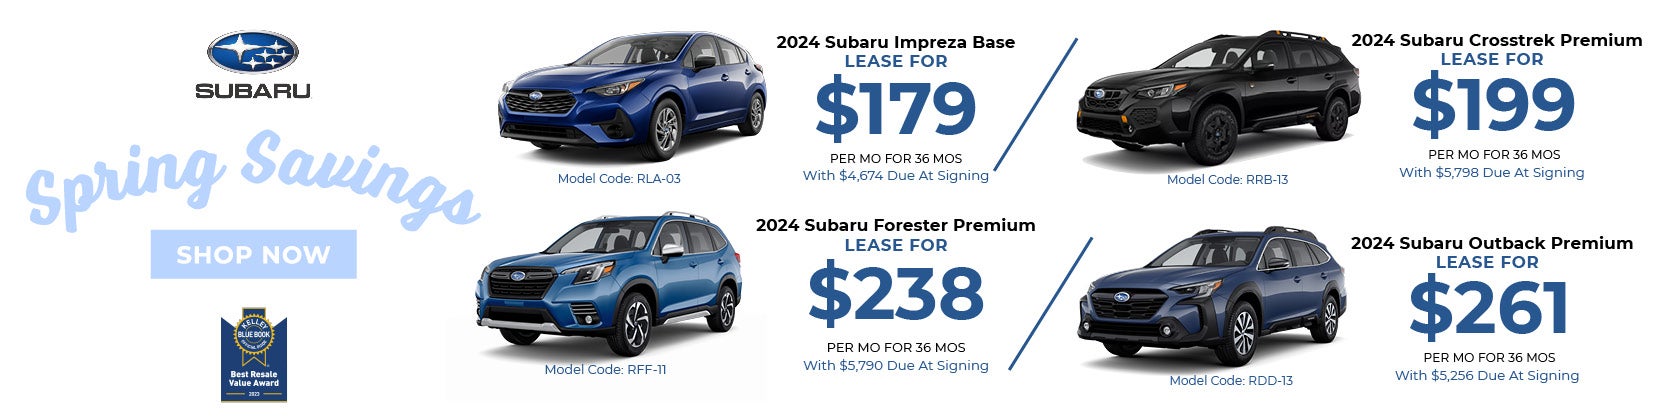 Subaru Spring Savings